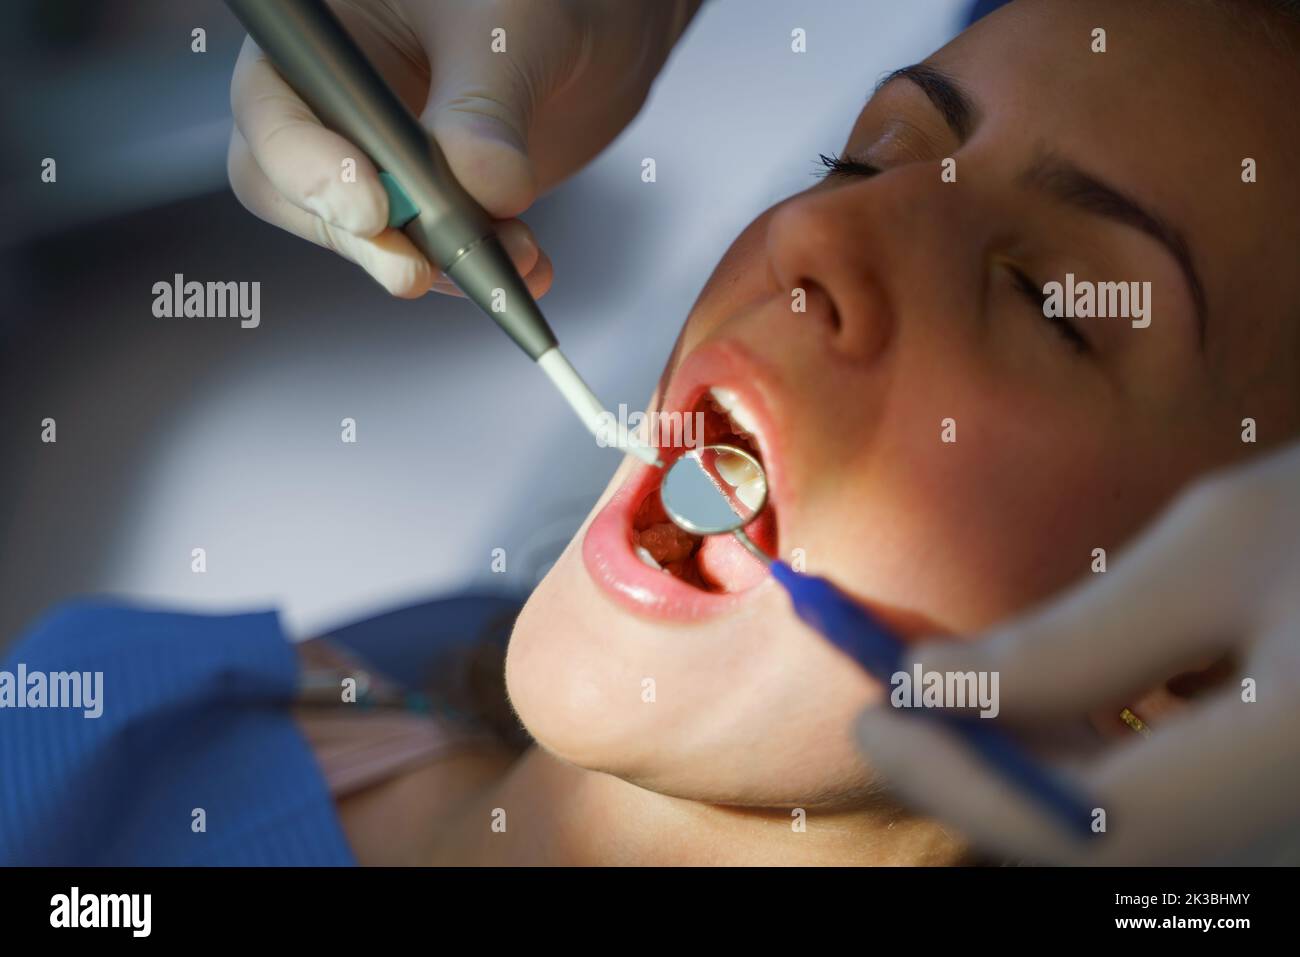 Close-up of young woman at dental examination in ambulance. Stock Photo